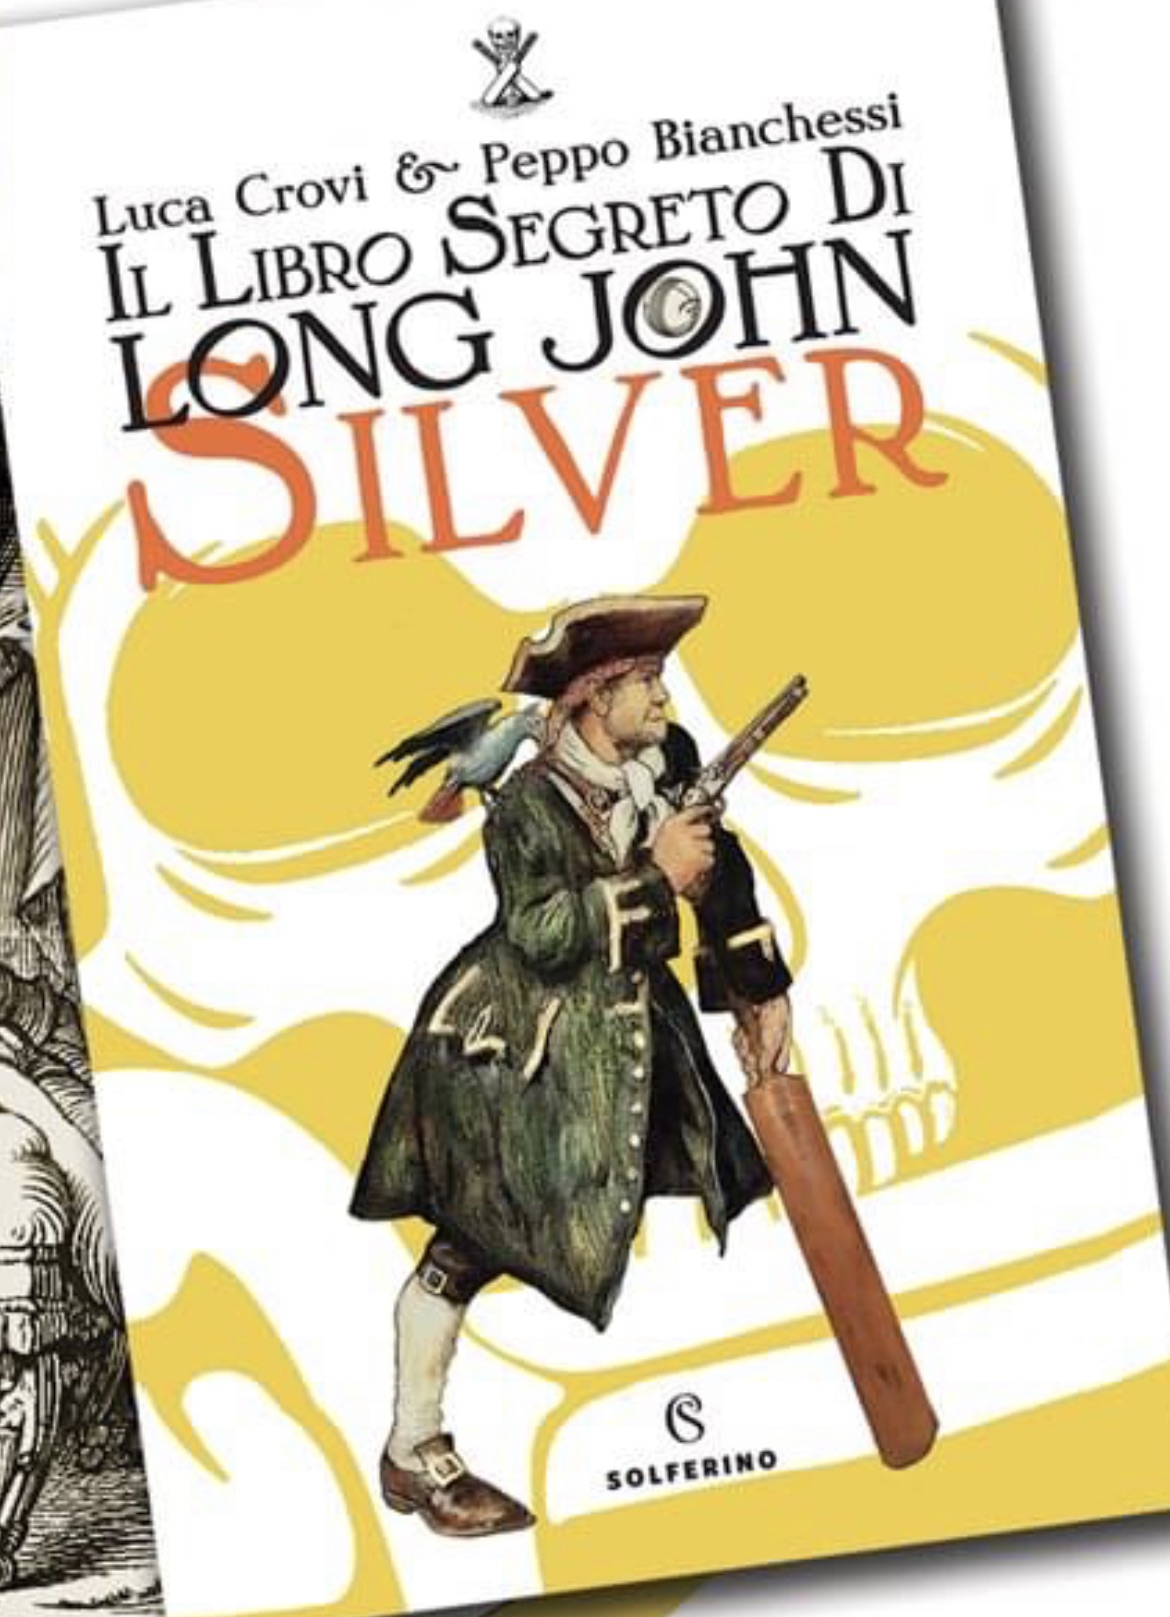 “Il libro segreto di Long John Silver”: il romanzo, scritto anche dal cremaschissimo Peppo Bianchessi che può diventare il Best Seller dell’estate 2022…